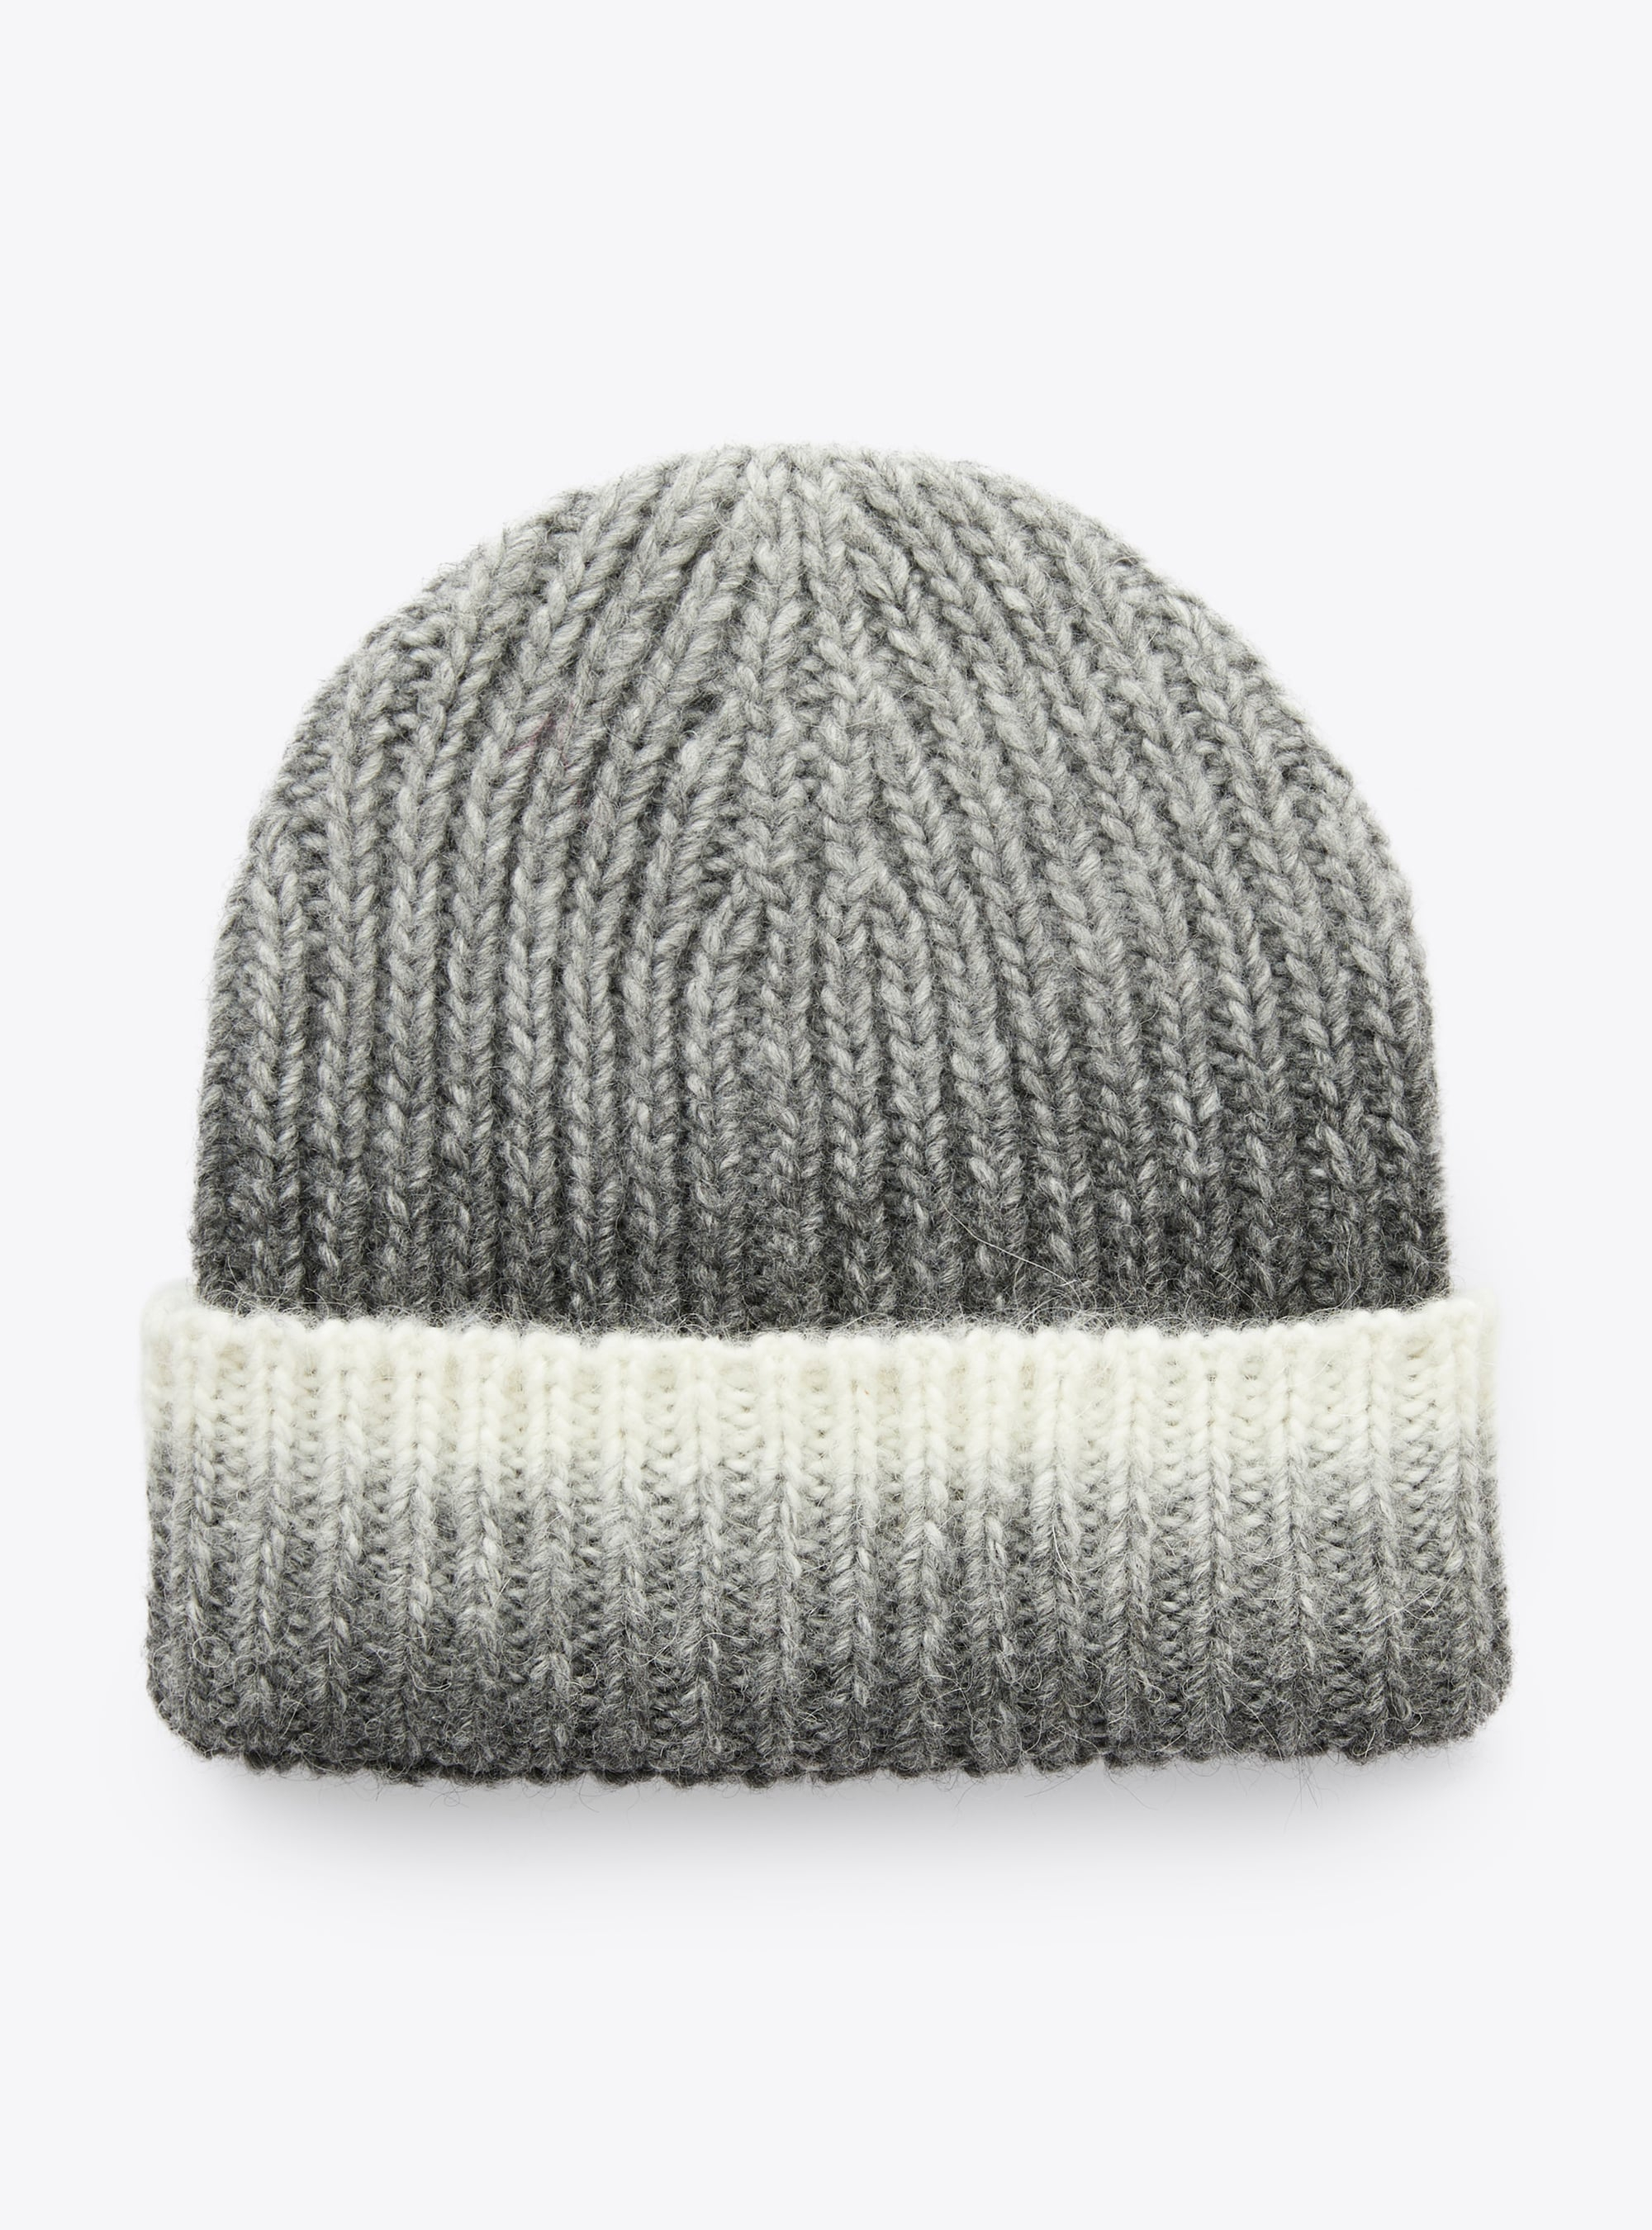 Tricot-knit hat in an alpaca-wool blend - Accessories - Il Gufo